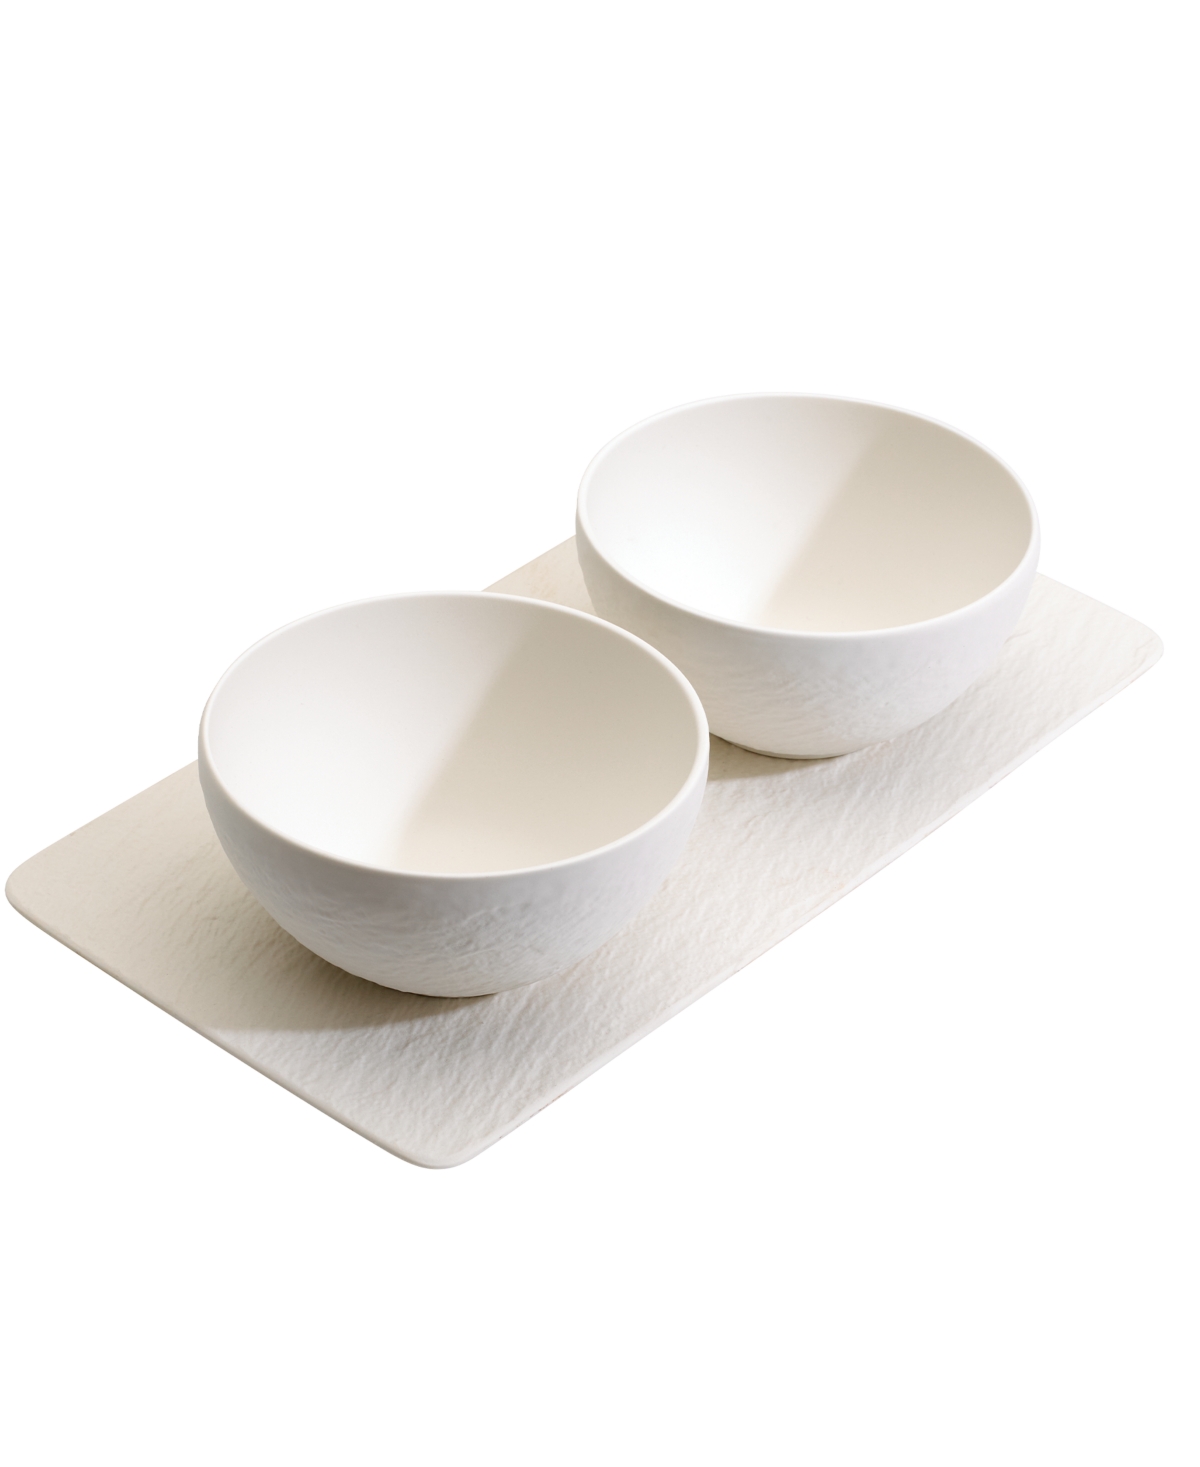 Manufacture Rock Condiment Bowl Set, 3 Pieces - White